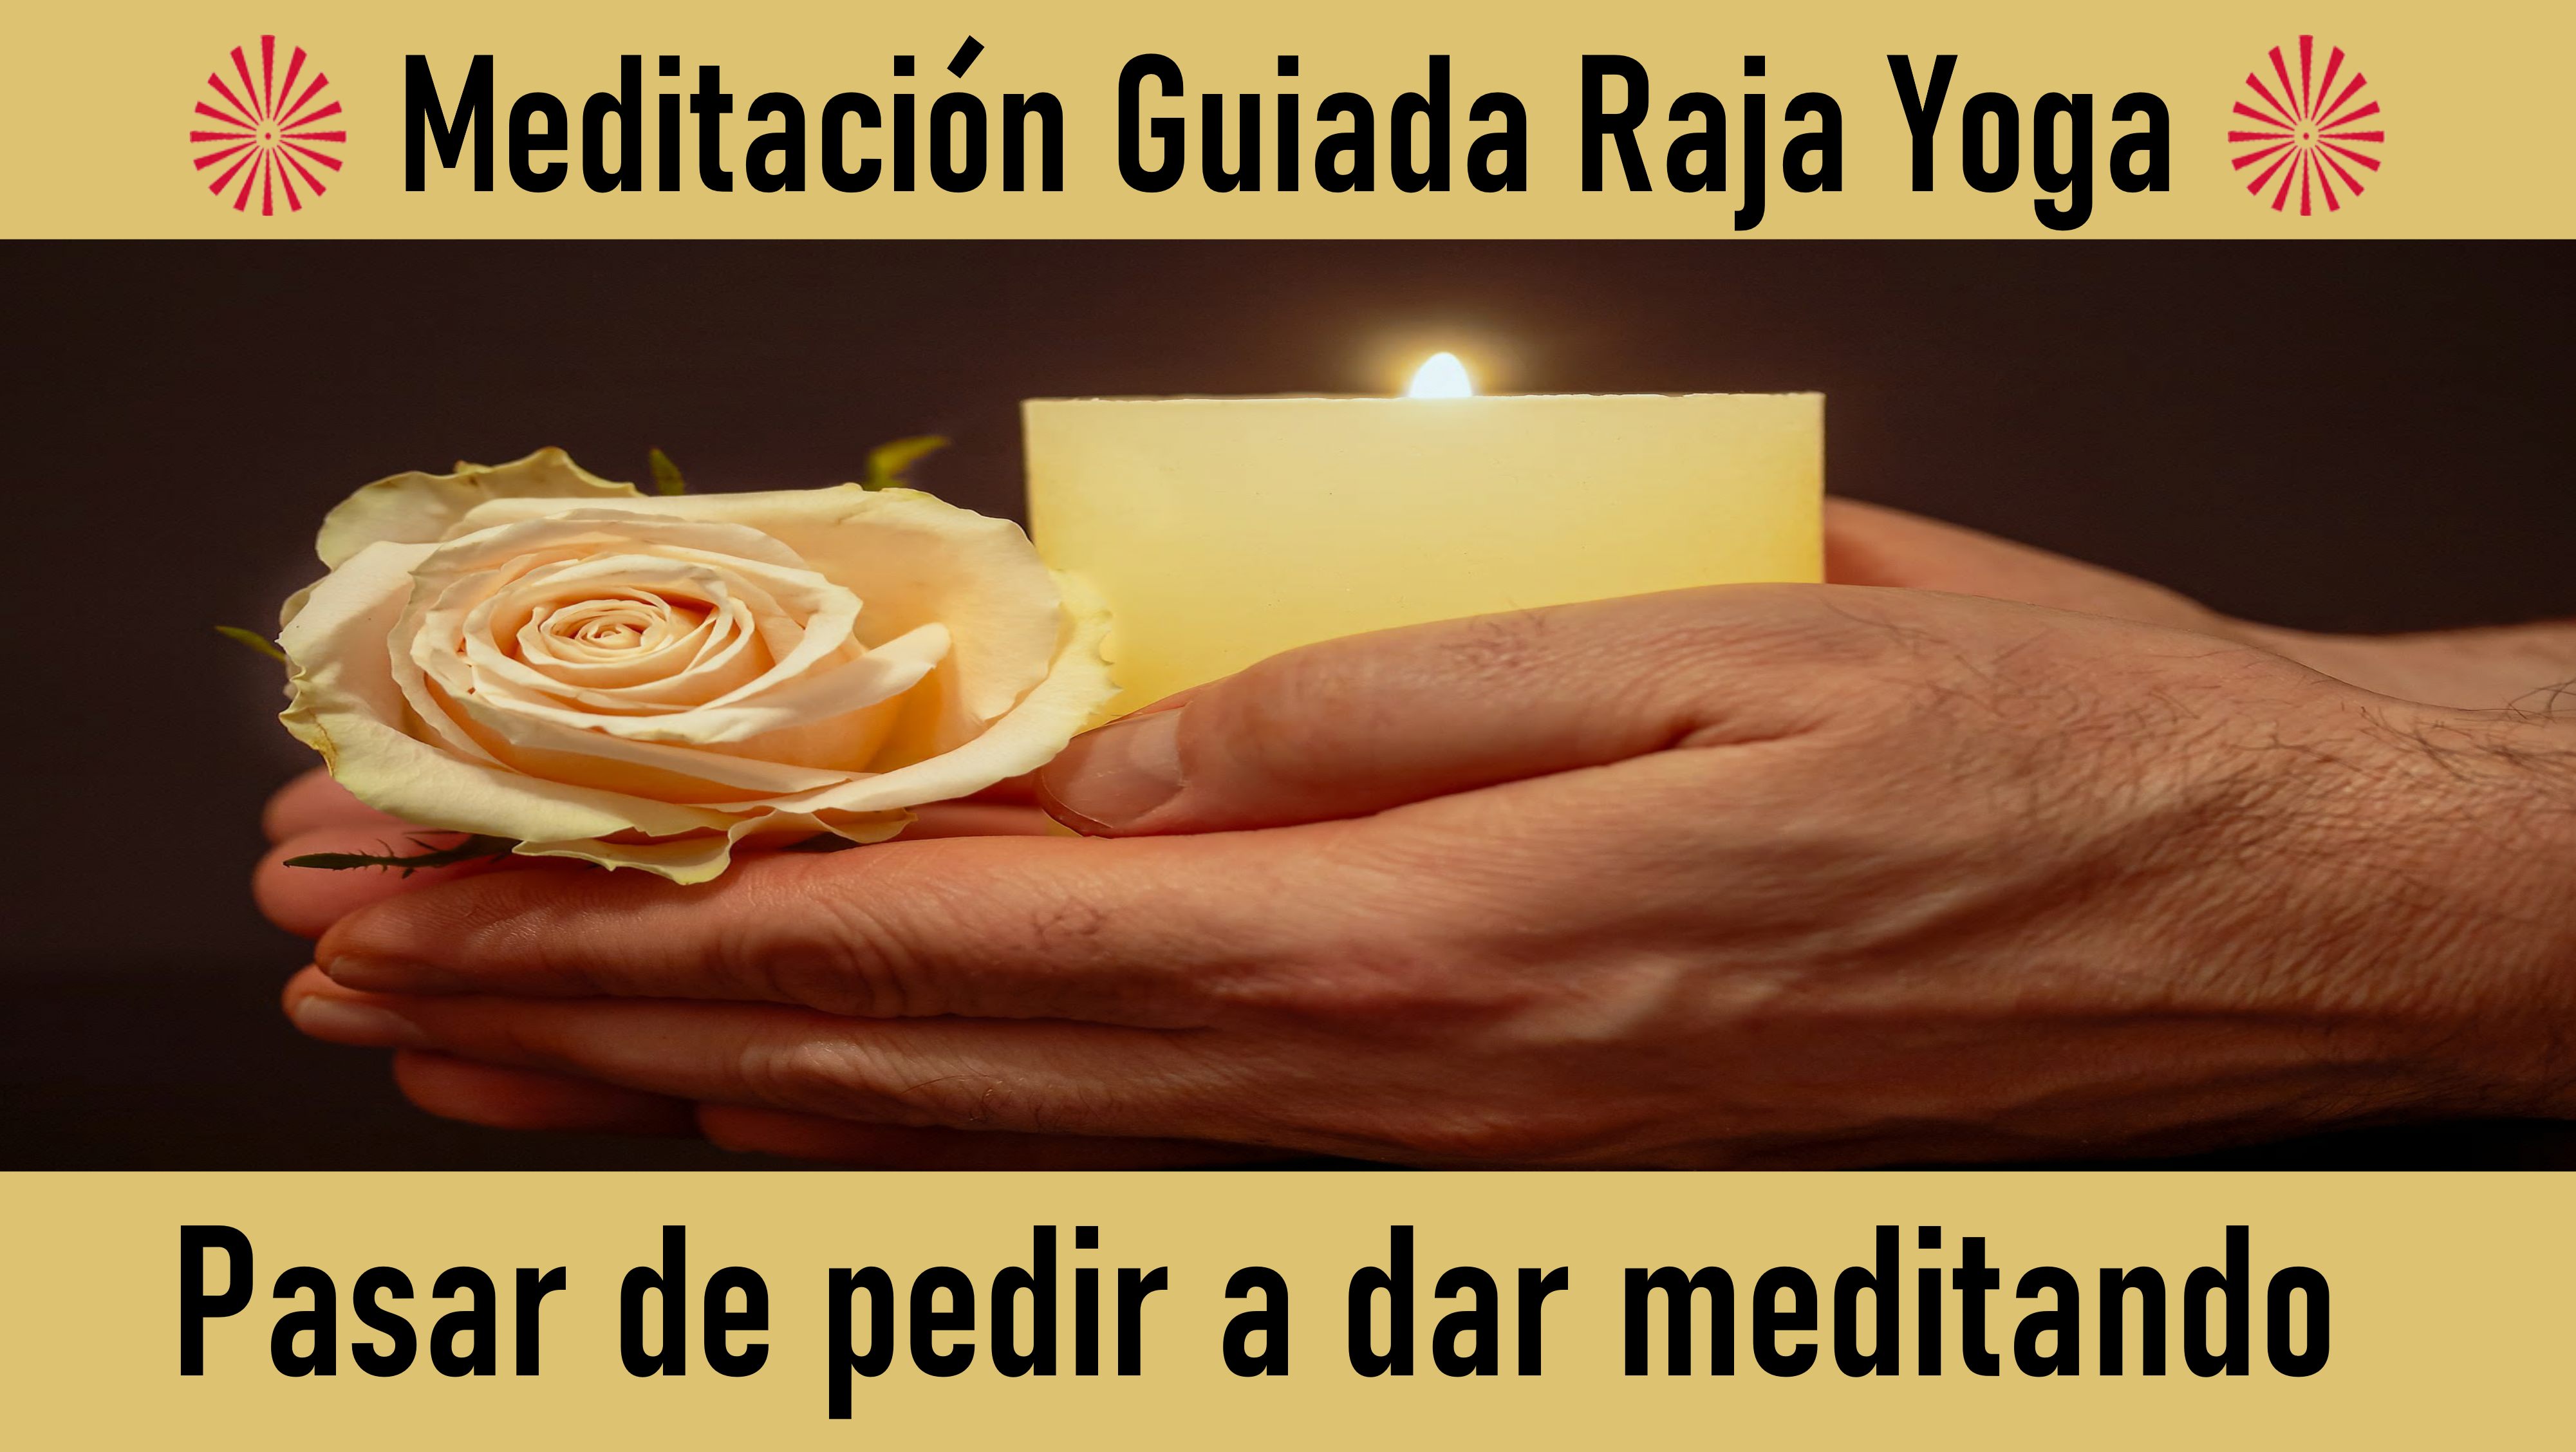 Meditación Raja Yoga: Pasar de pedir a dar meditando (16 Septiembre 2020) On-line desde Sevilla